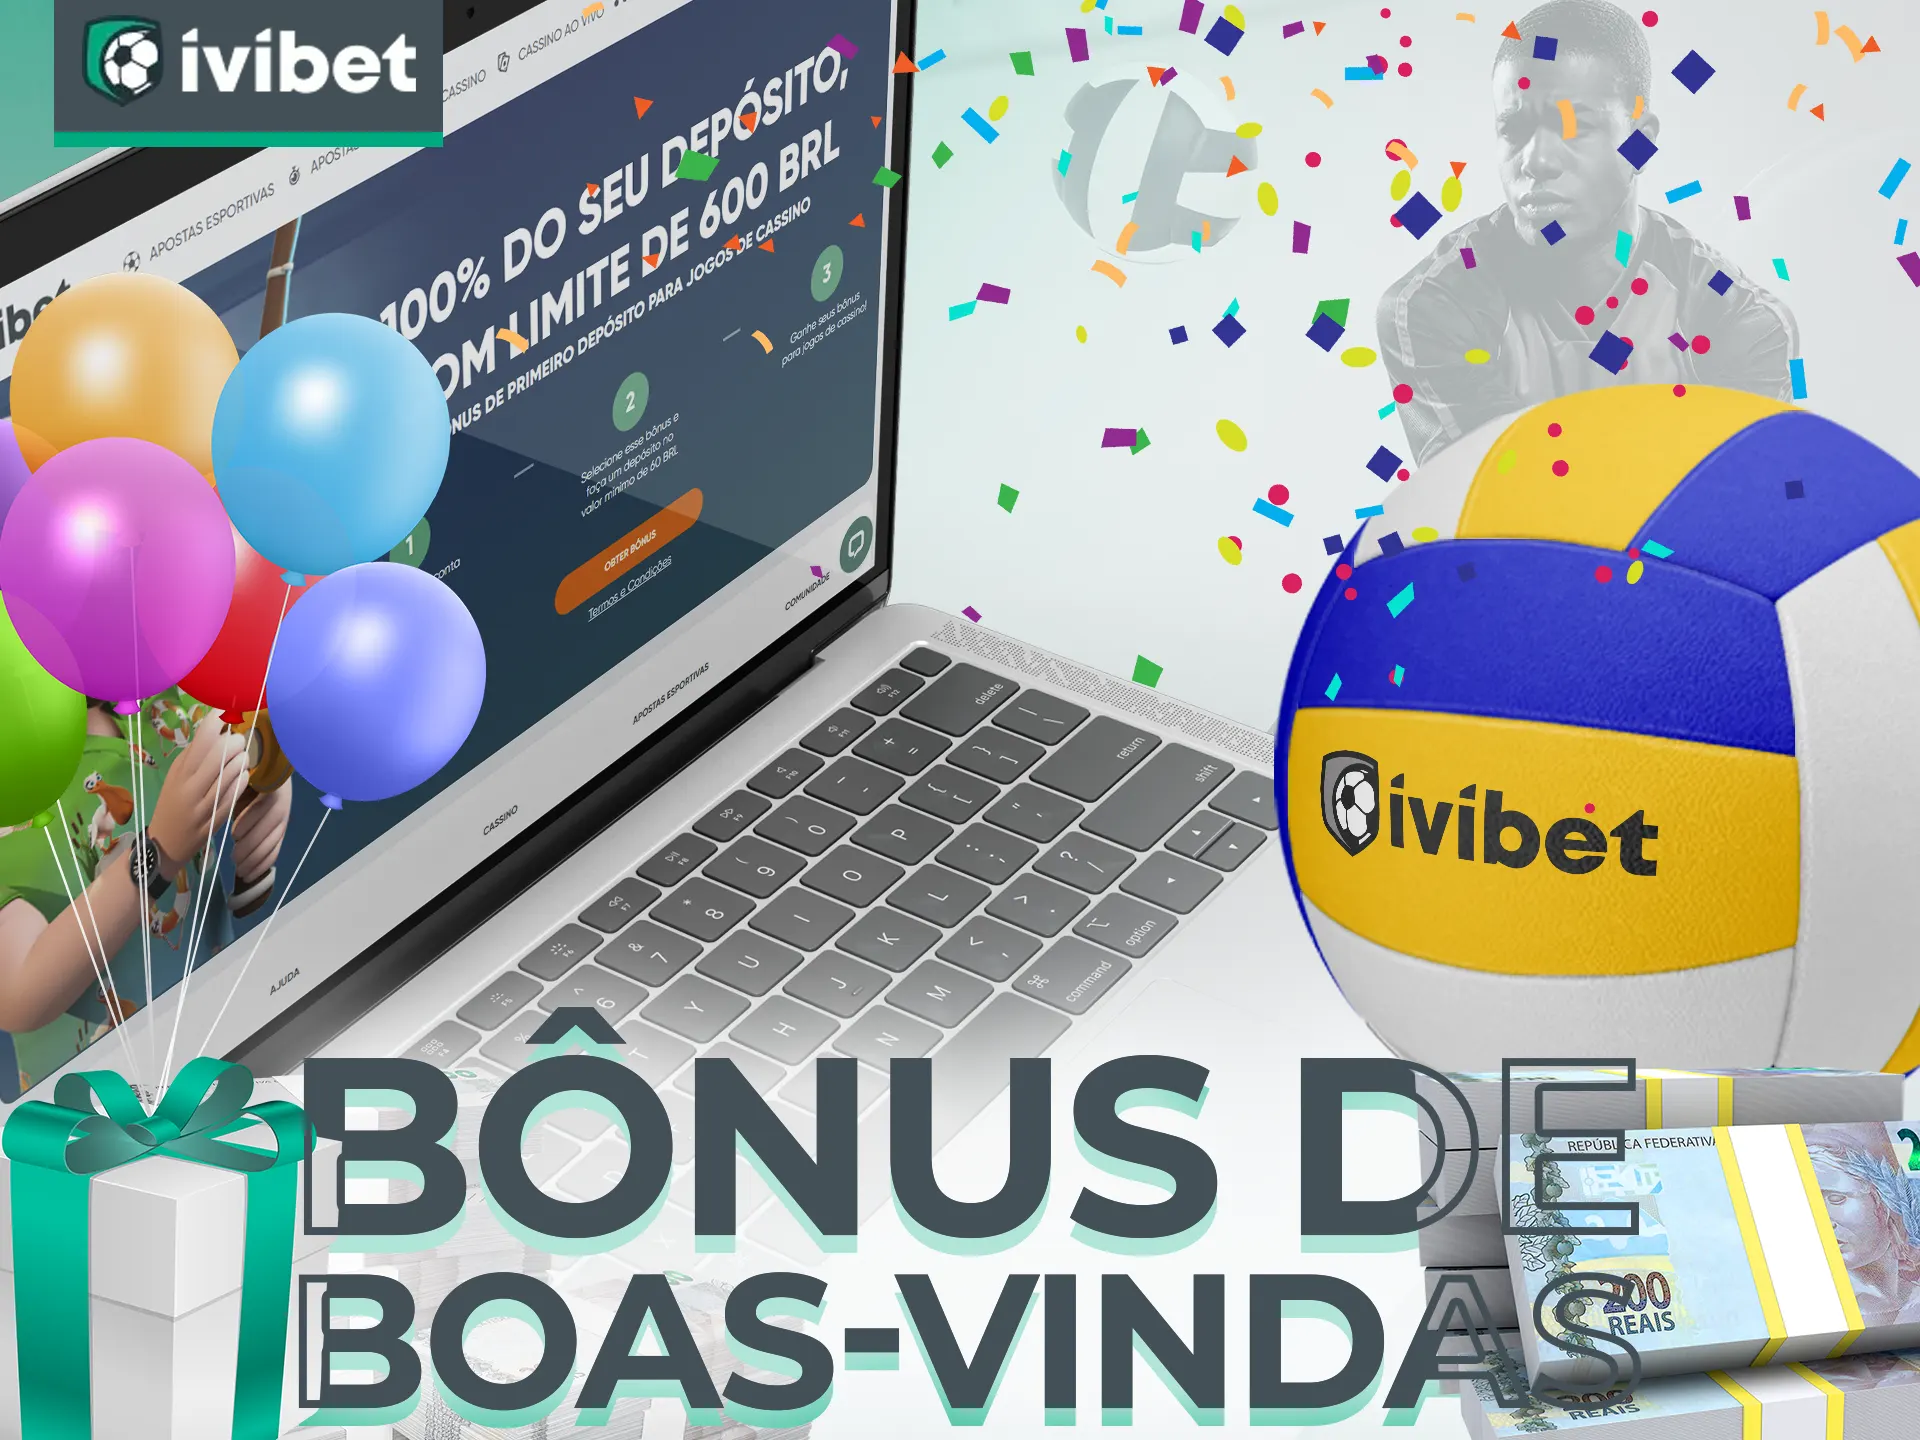 Multiplique seus ganhos no Ivibet em até R$ 900 com bônus de boas-vindas para apostas em vôlei.